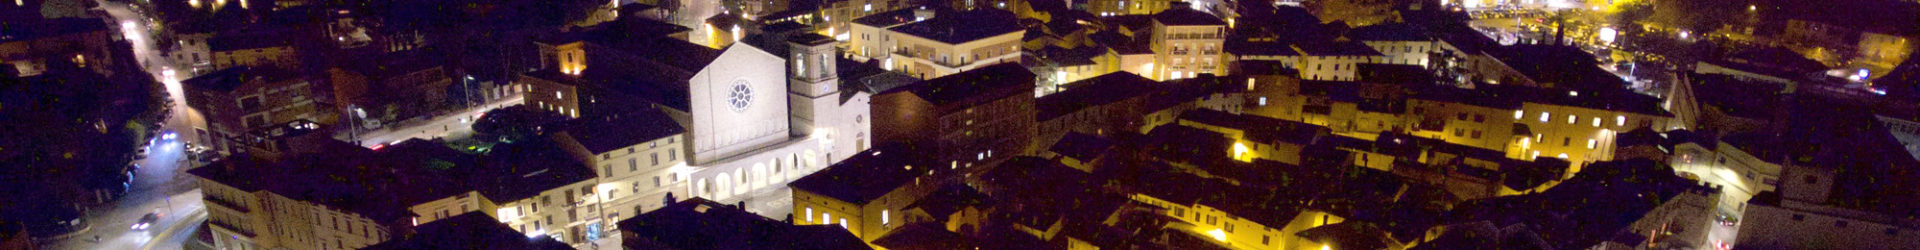 Castagnata di San Martino